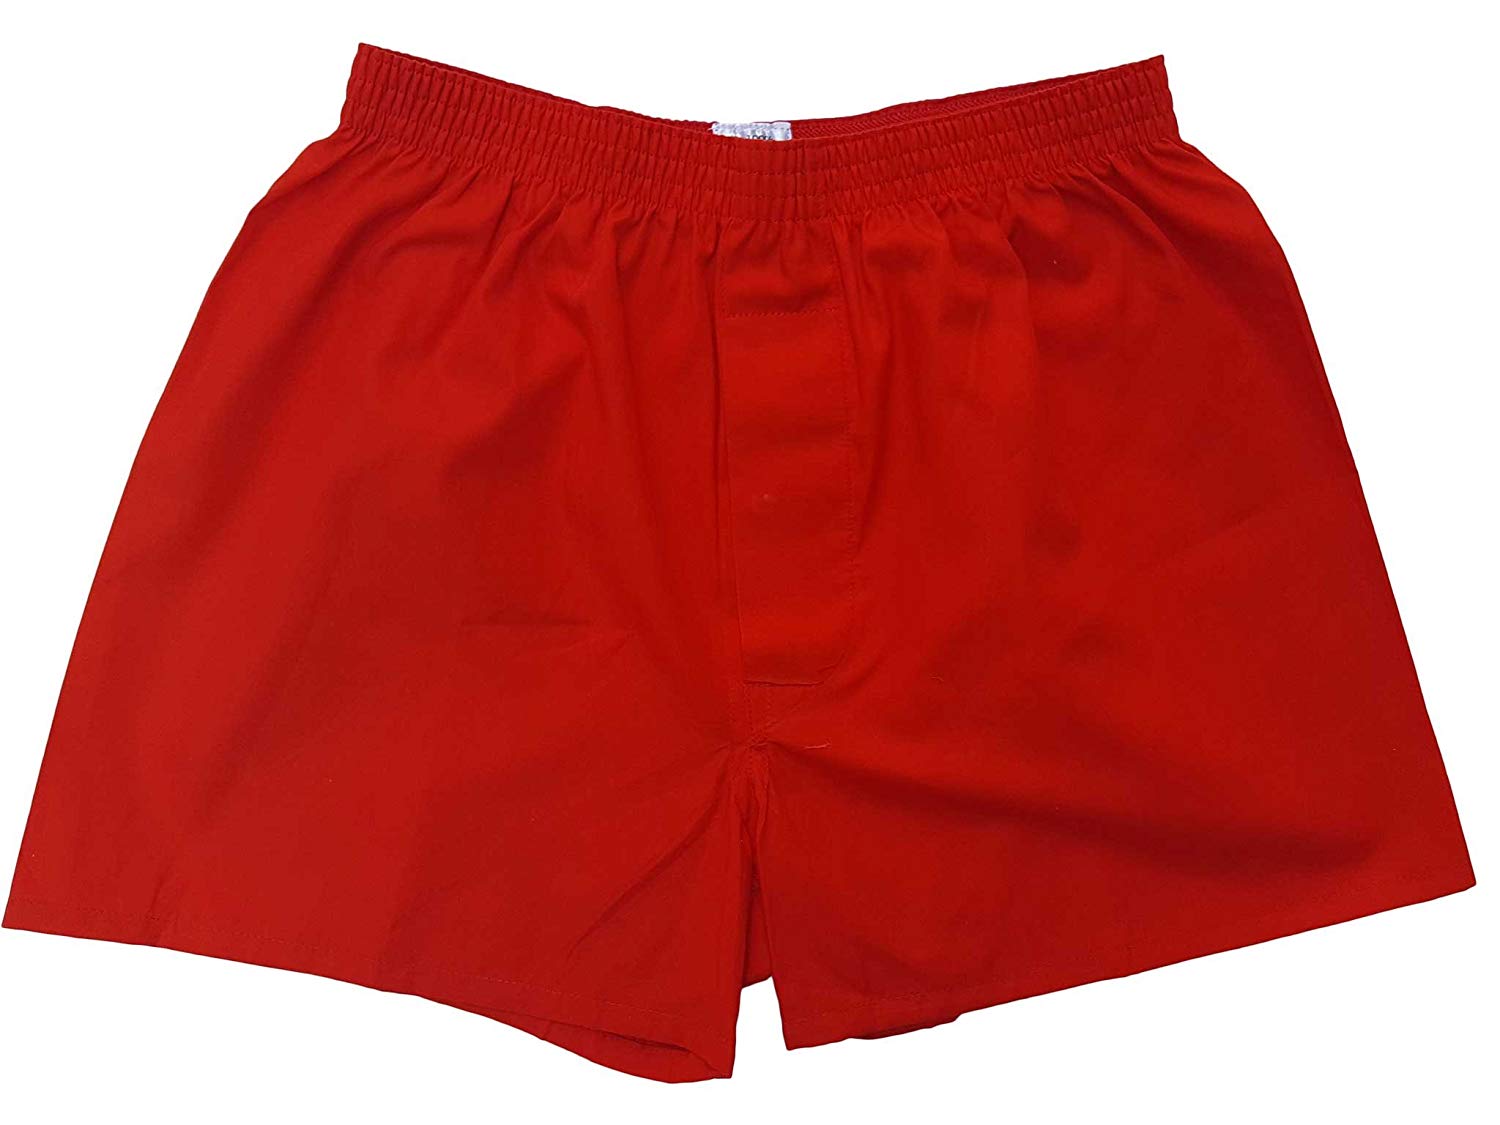 トランクス 赤 赤色 赤い 日本製 10枚 セット 父の日 ギフト 誕生日 プレゼント 福袋 送料無料 還暦祝い メンズ 下着 男性 M L LL 綿100% 前開き 赤パンツ 紳士 パンツ